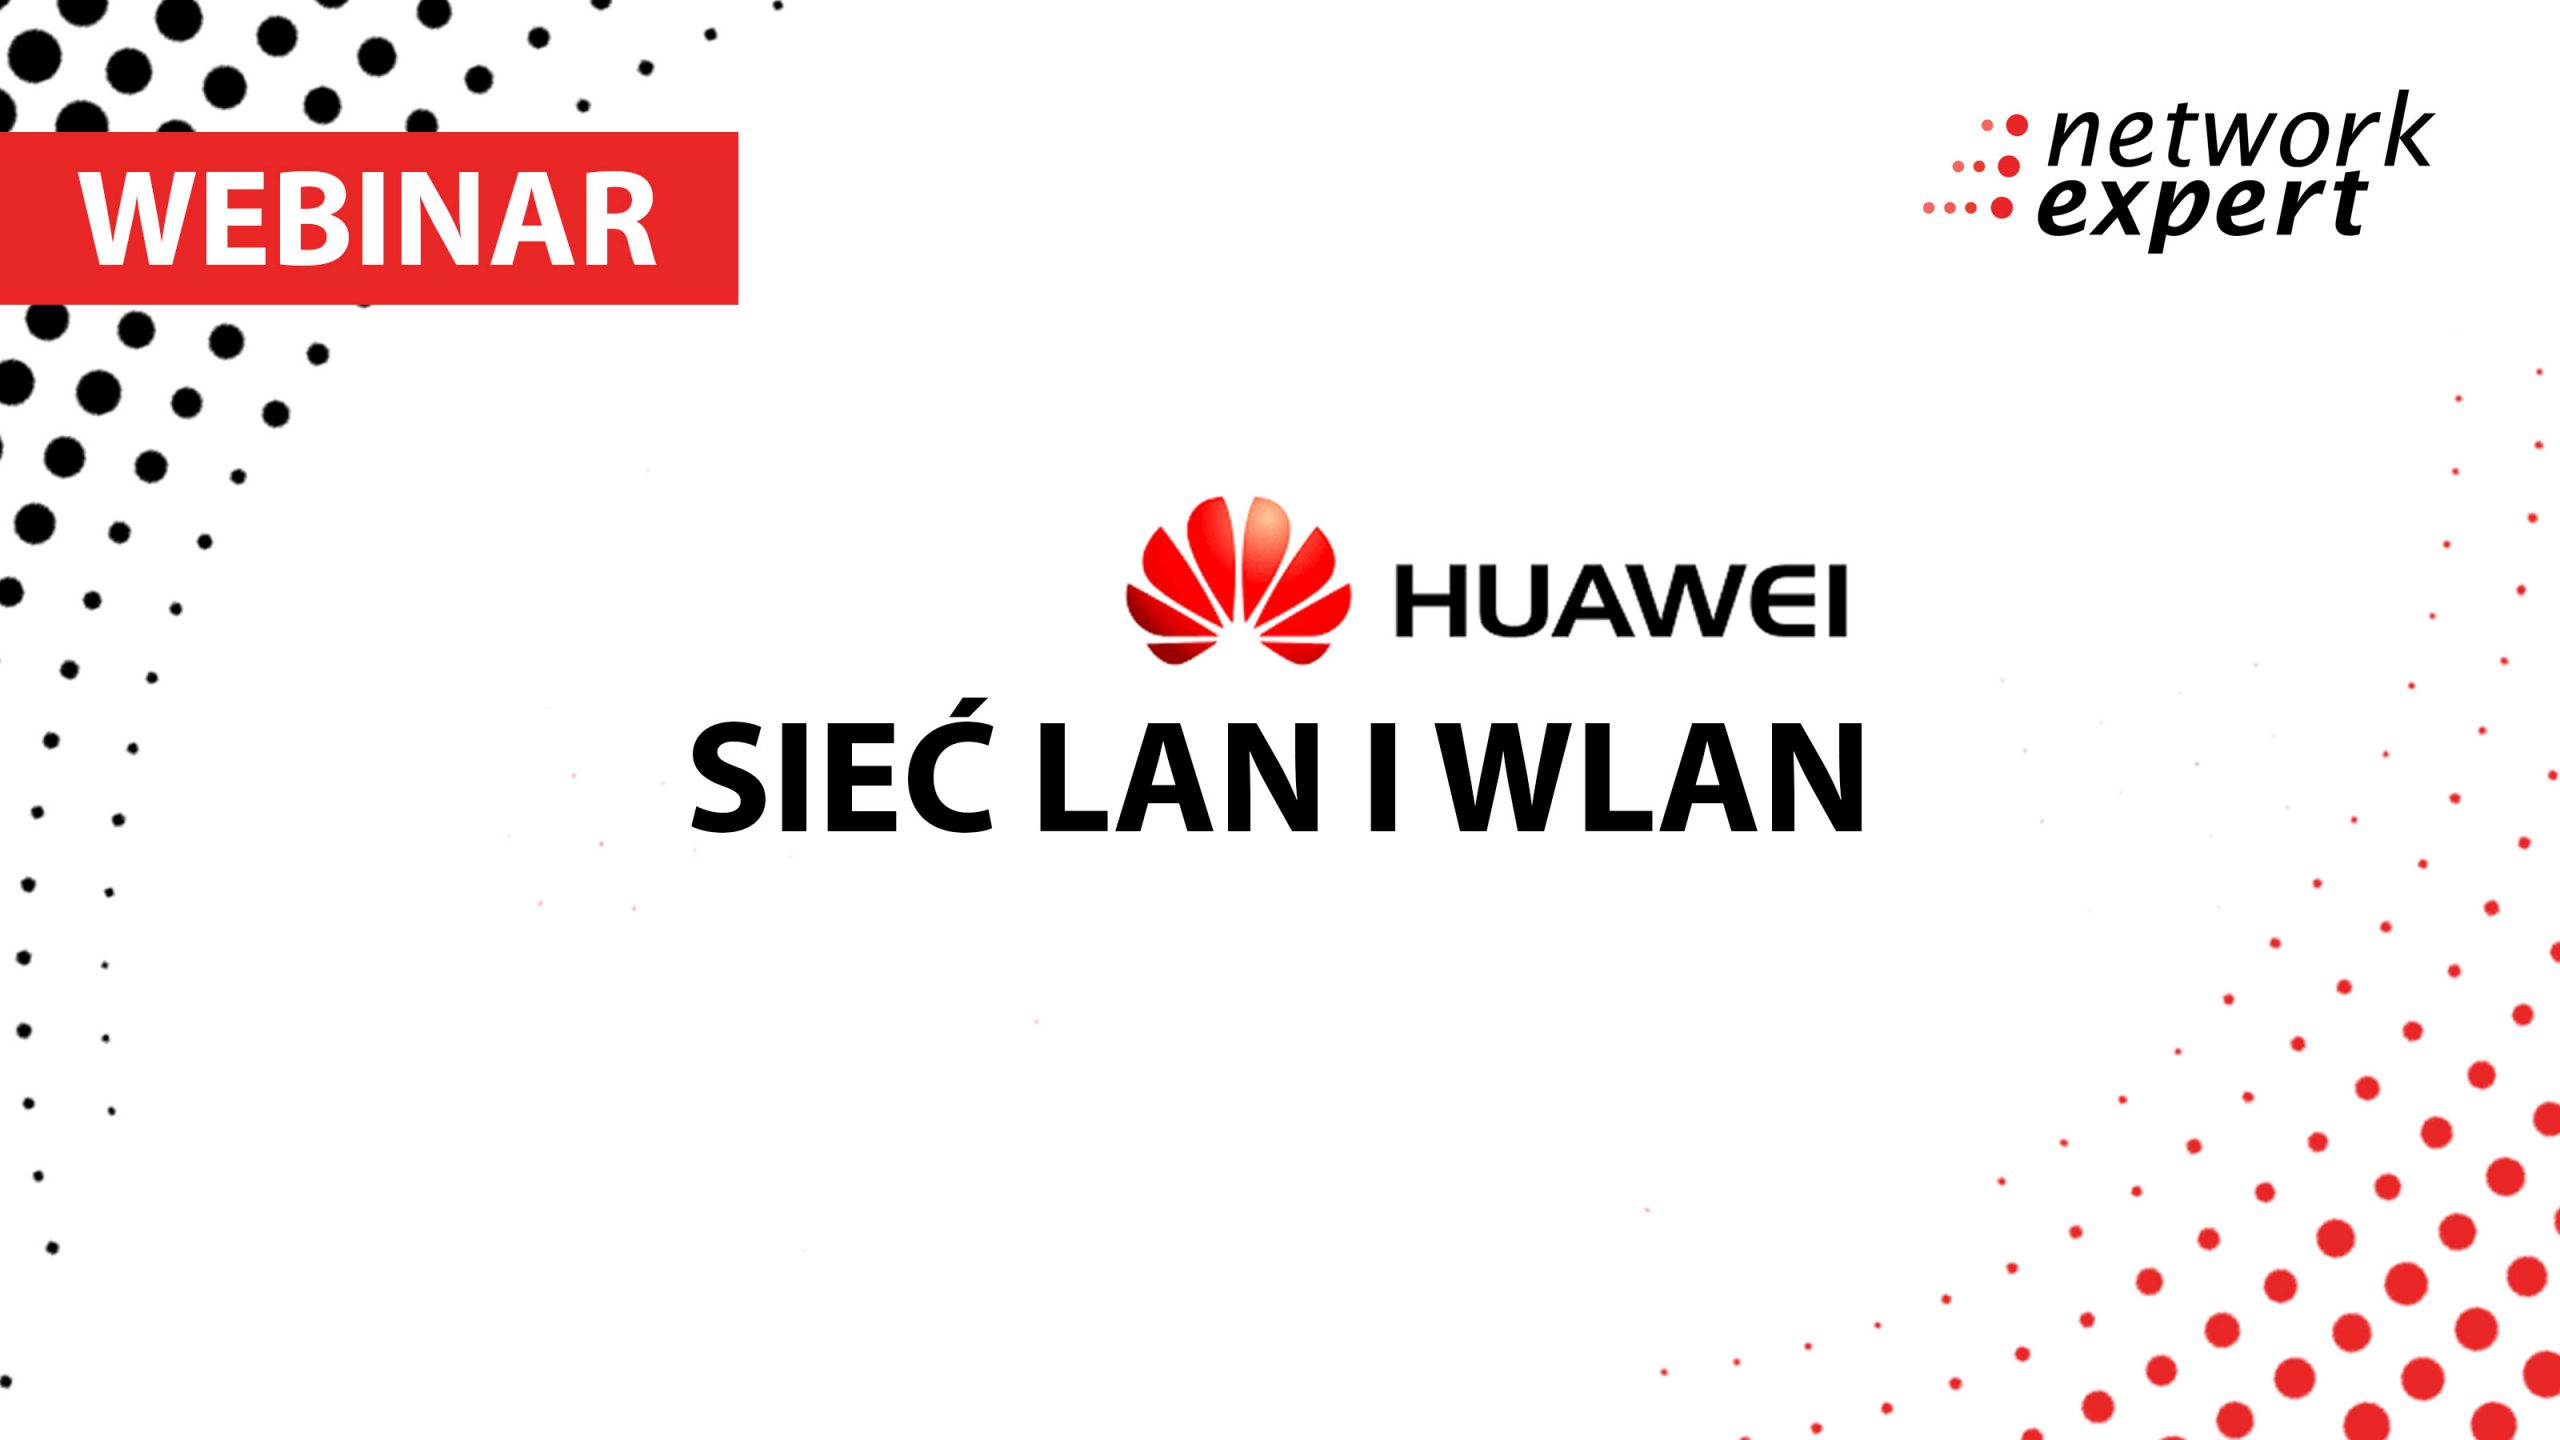 Sieć LAN i WLAN według Huawei – Webinar